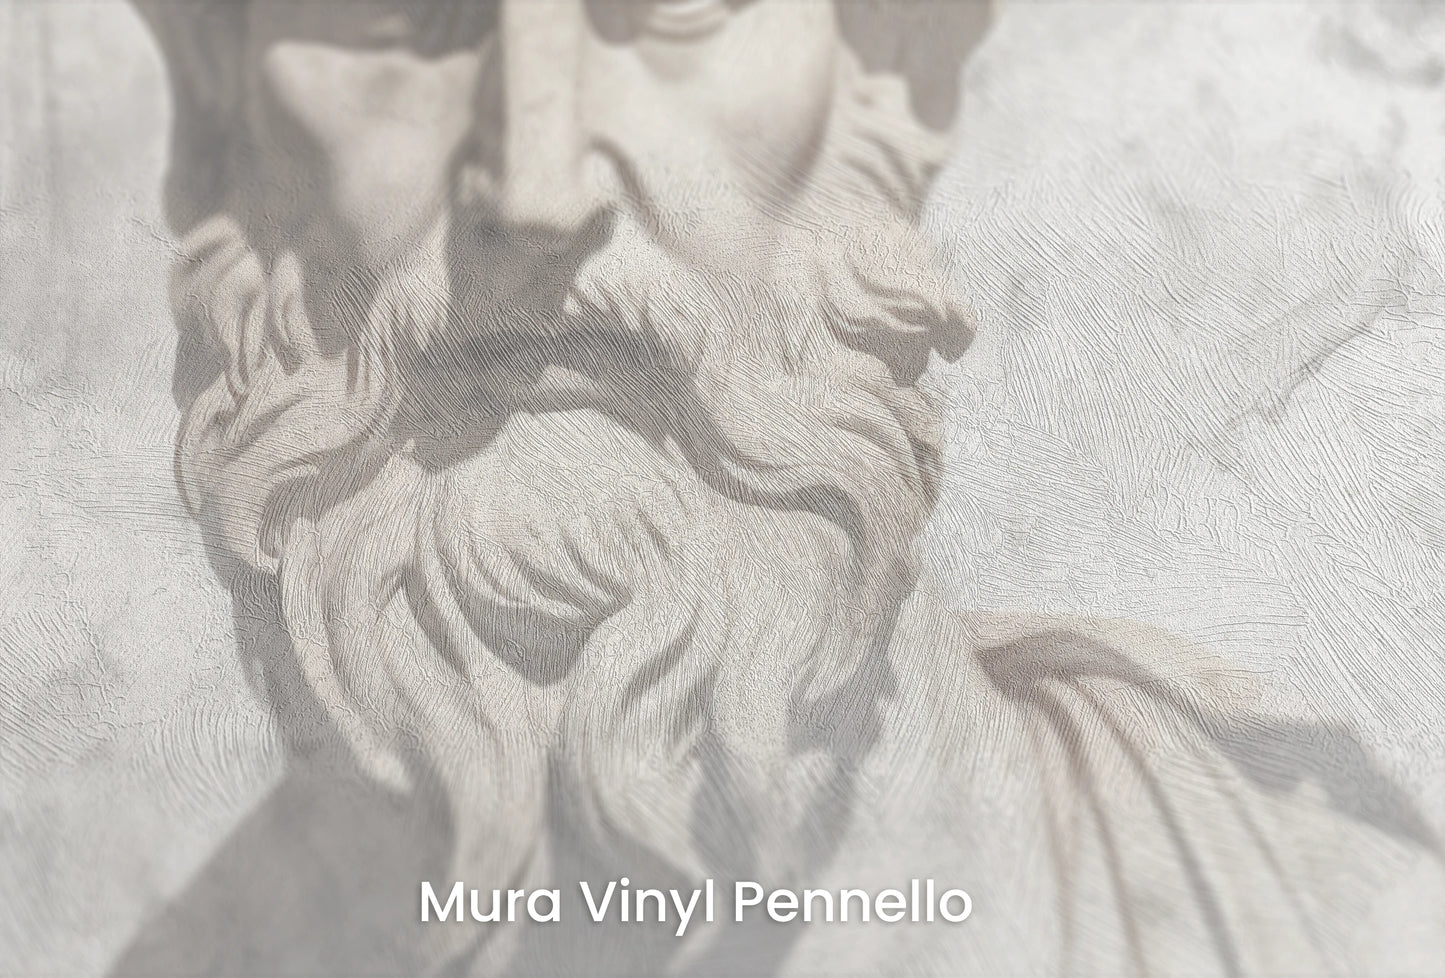 Zbliżenie na artystyczną fototapetę o nazwie Zeus's Deliberation na podłożu Mura Vinyl Pennello - faktura pociągnięć pędzla malarskiego.